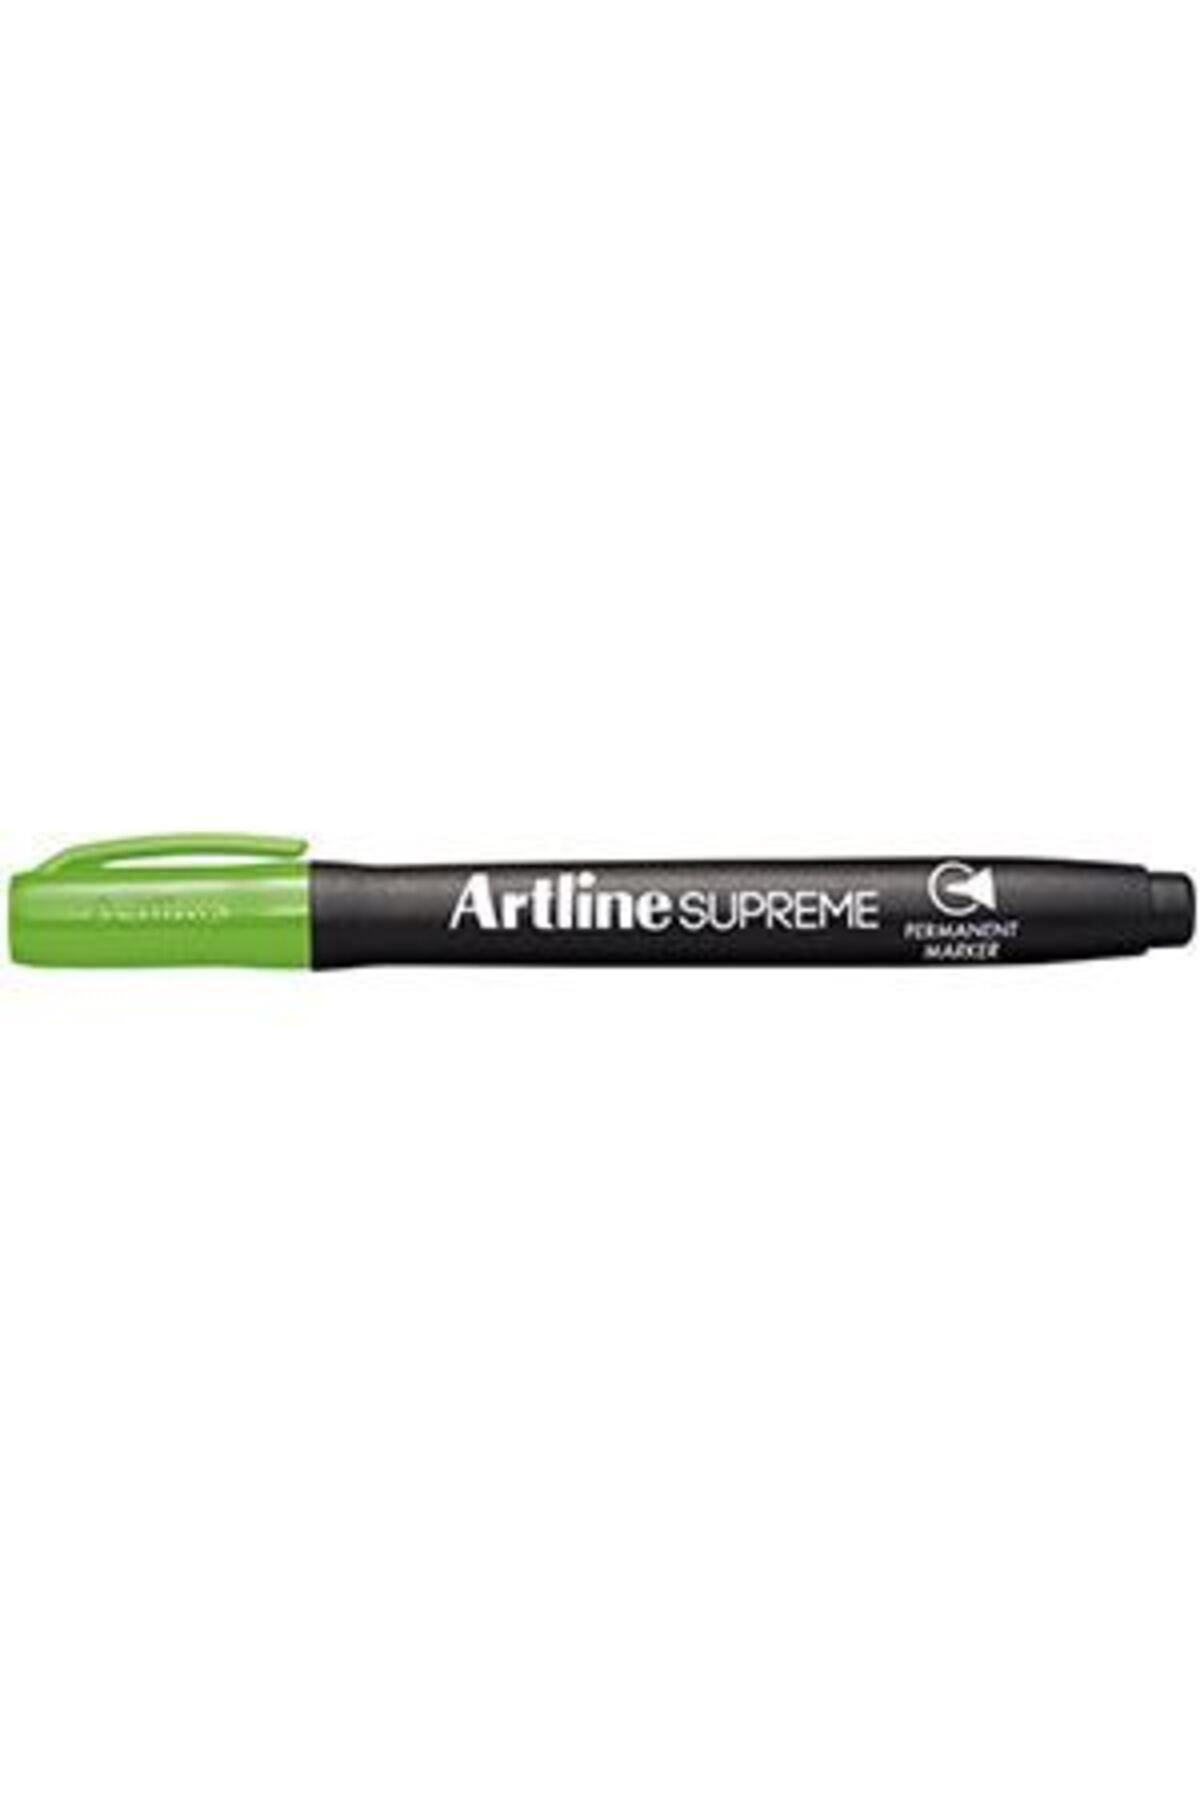 artline Supreme Kalıcı Markör 1 Mm - Sarımsı Yeşil